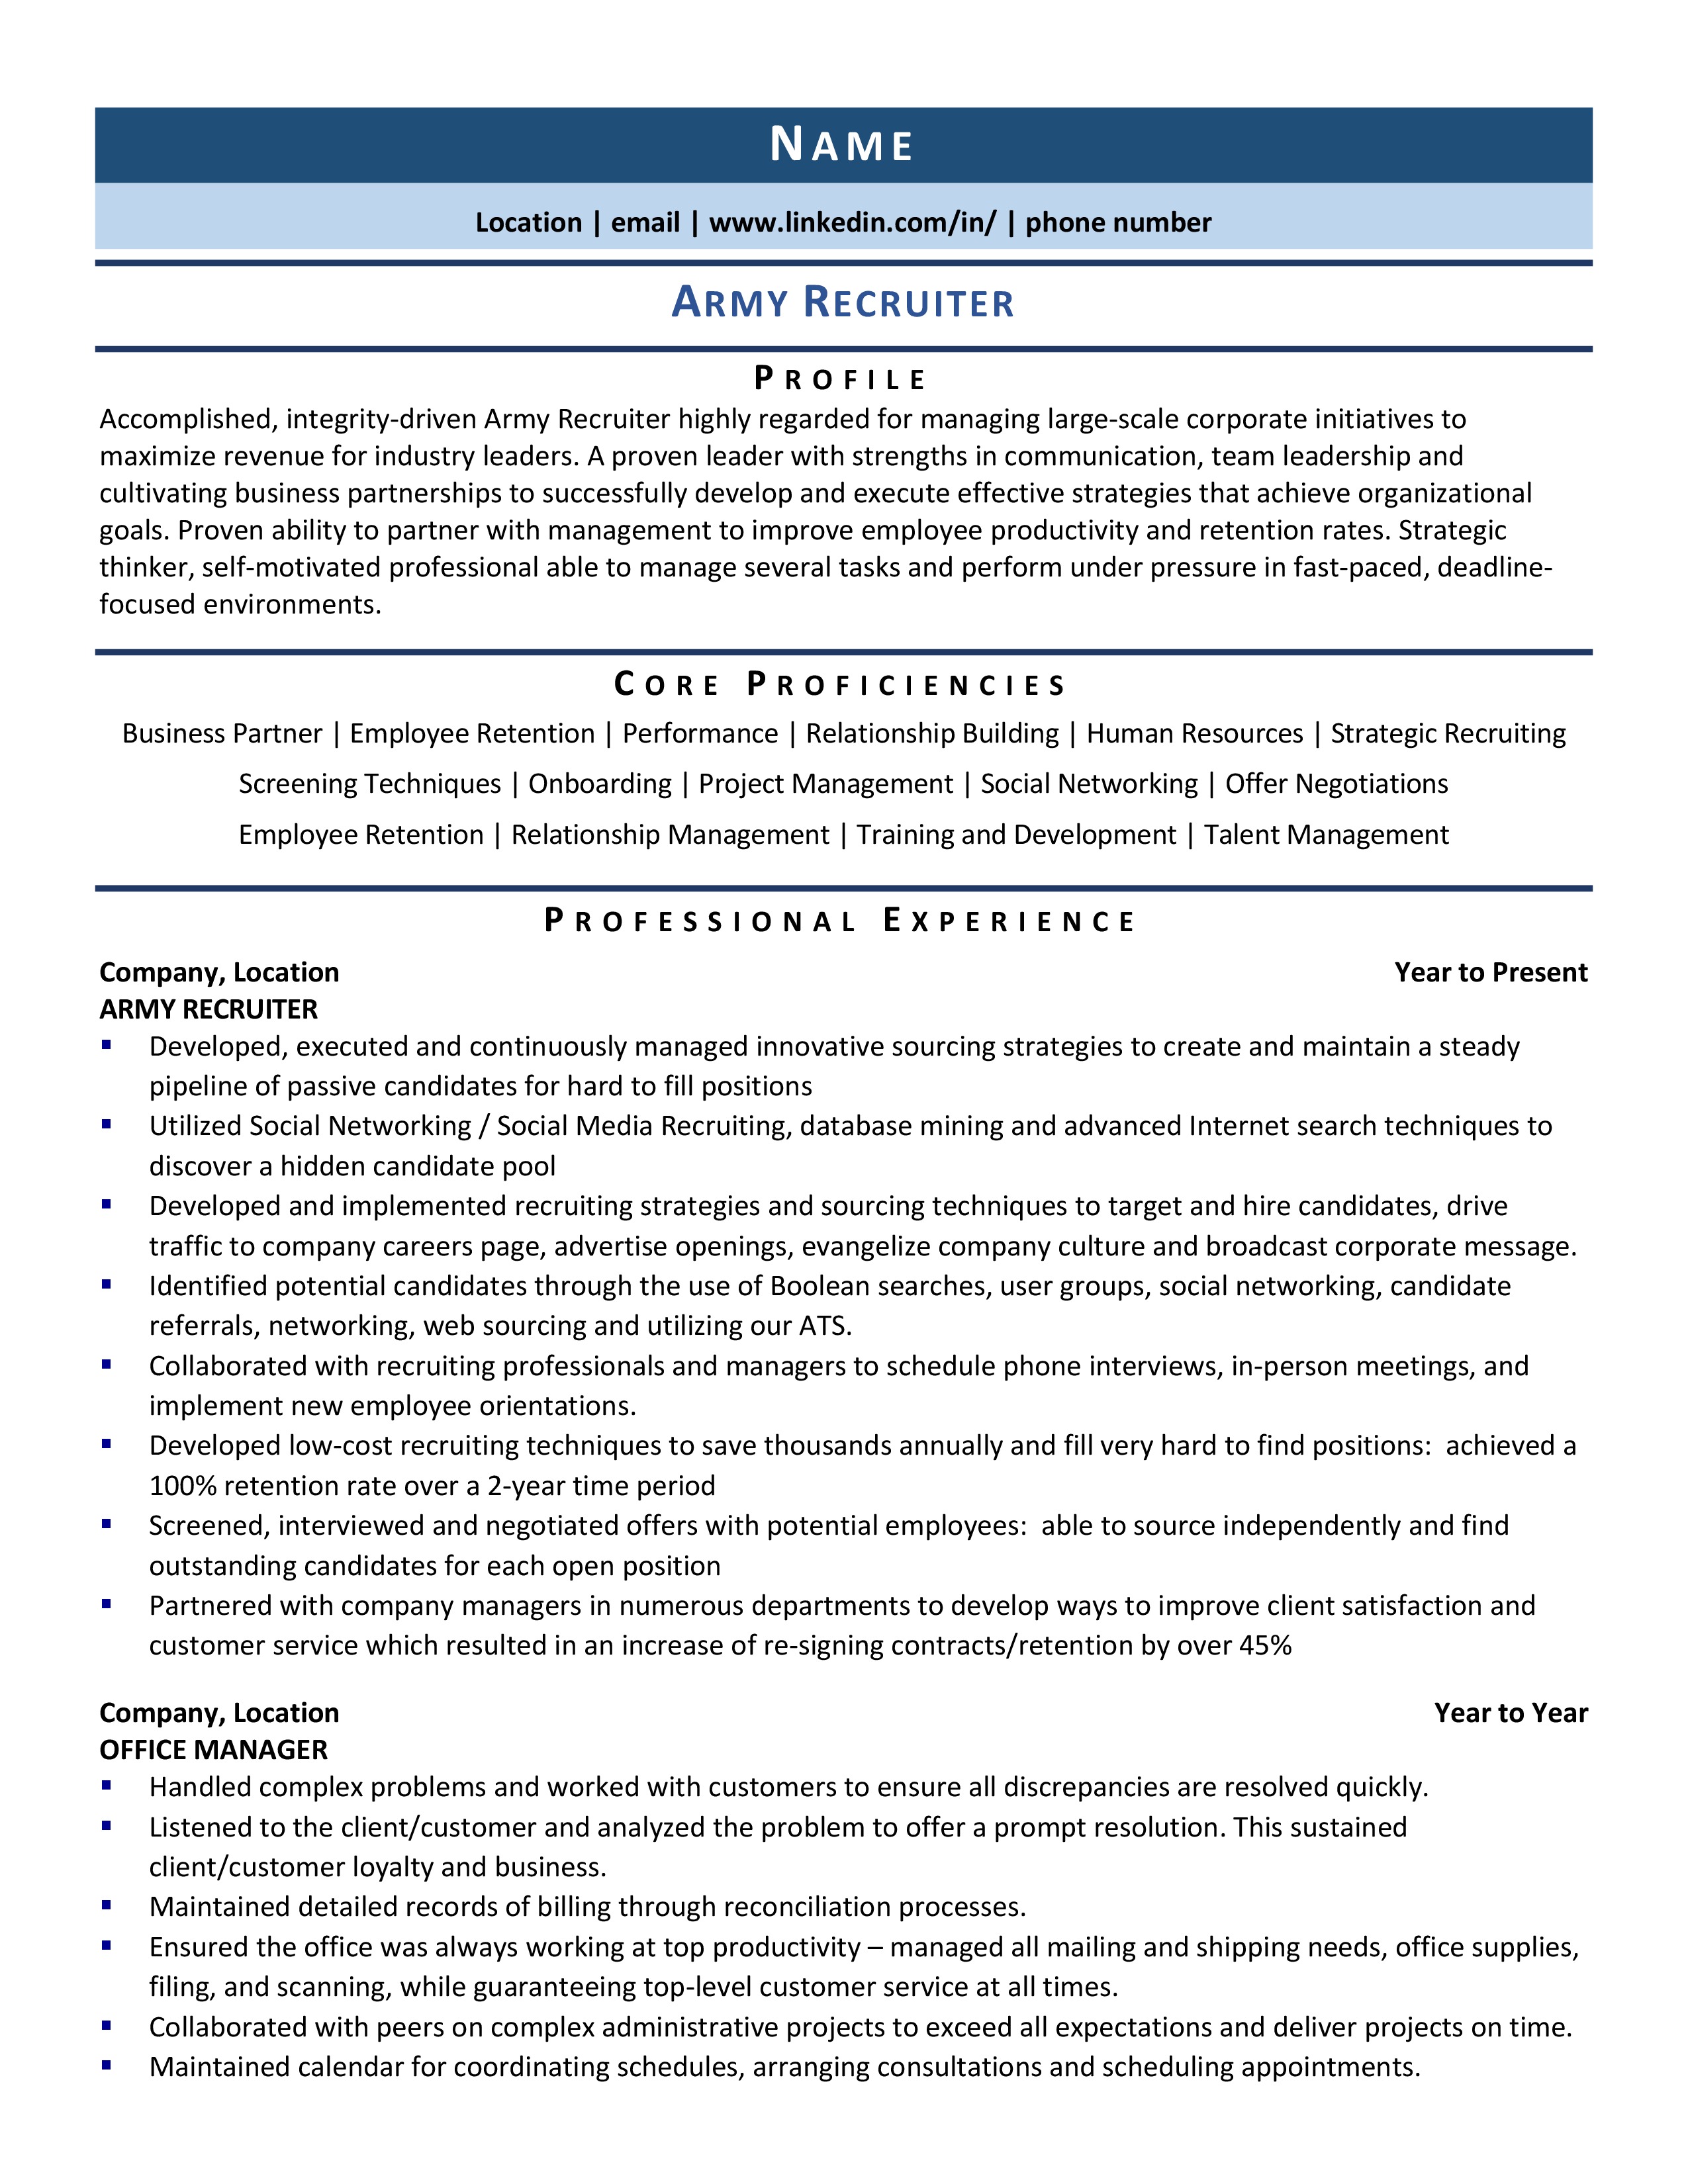 military recruiter job description for resume